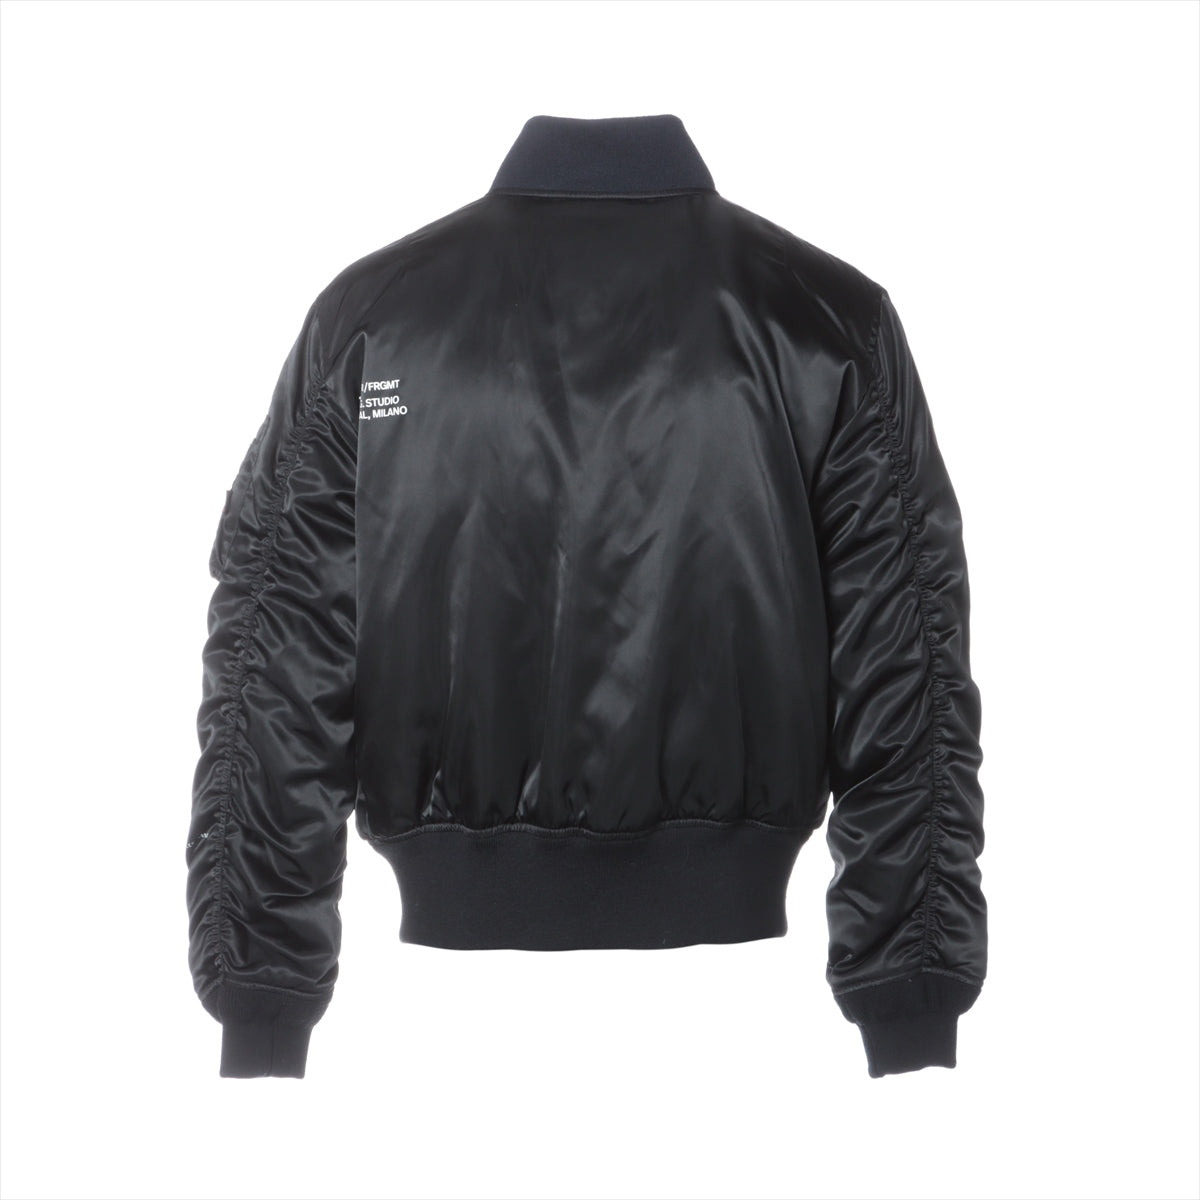 Moncler Genius Fragment RASSOS 21 years Nylon Down jacket 2 Men's Black  MA-1 Hiroshi Fujiwara